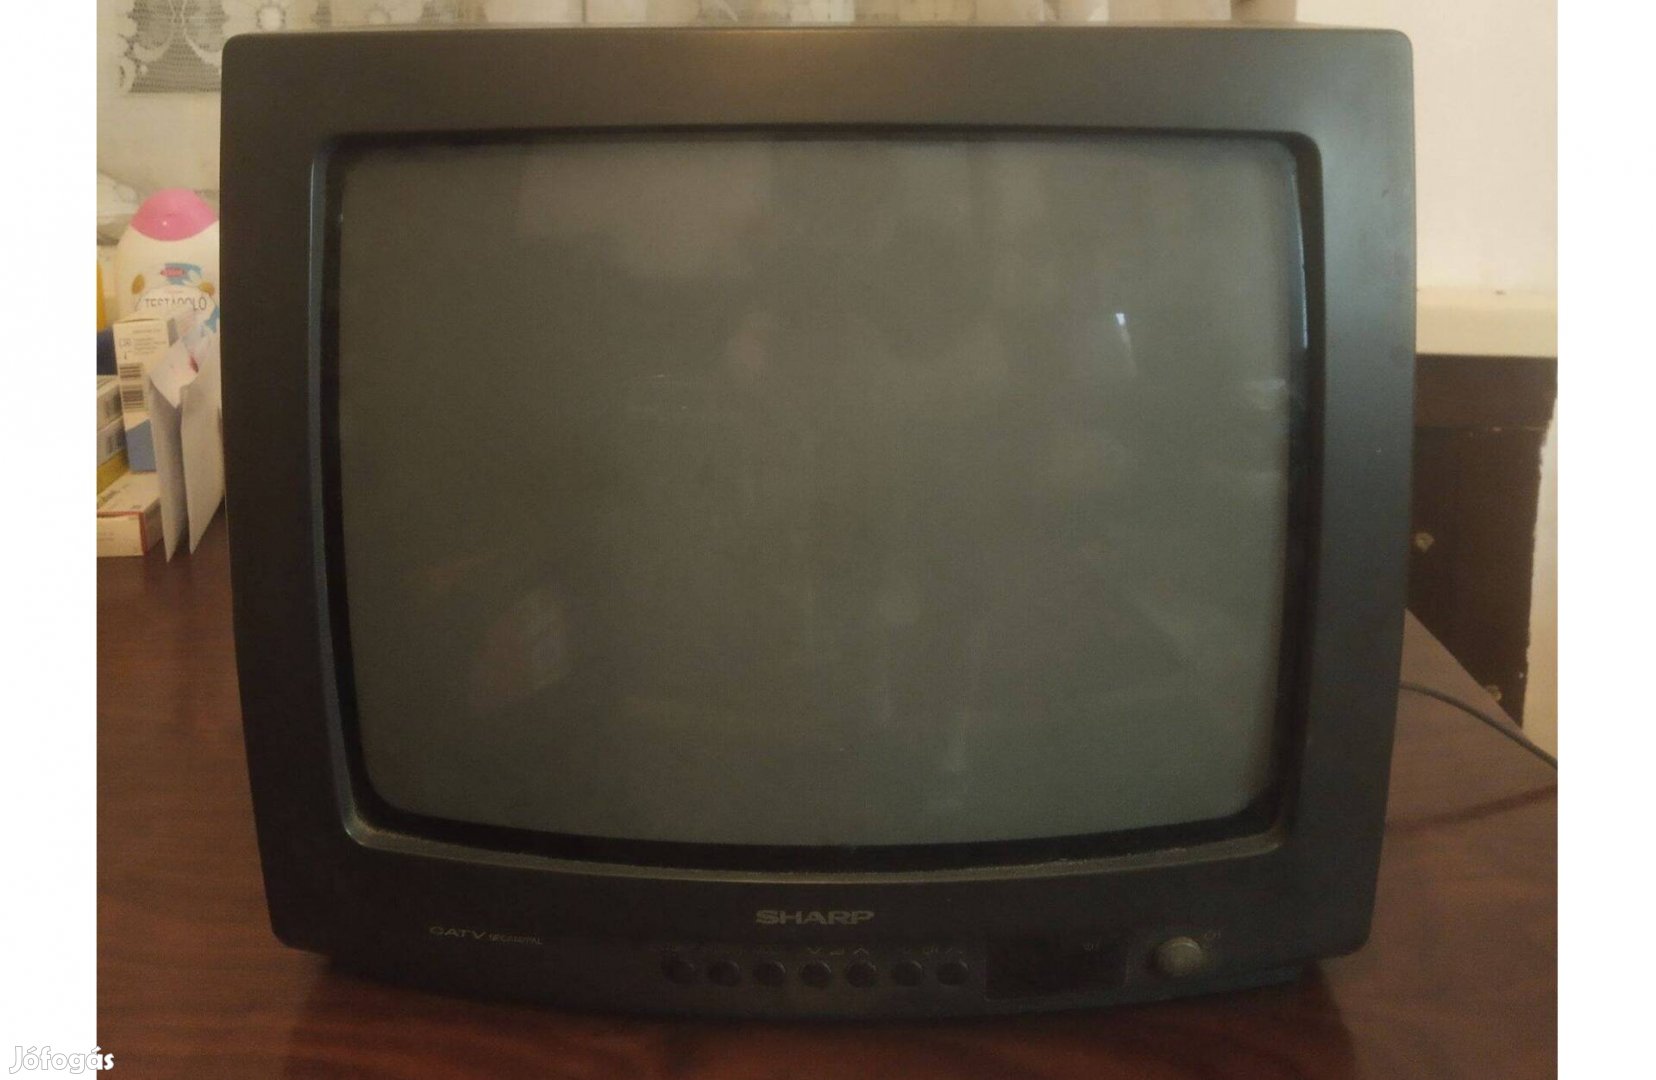 Olcsón eladó régi Sharp TV (36 cm-es képátló)!